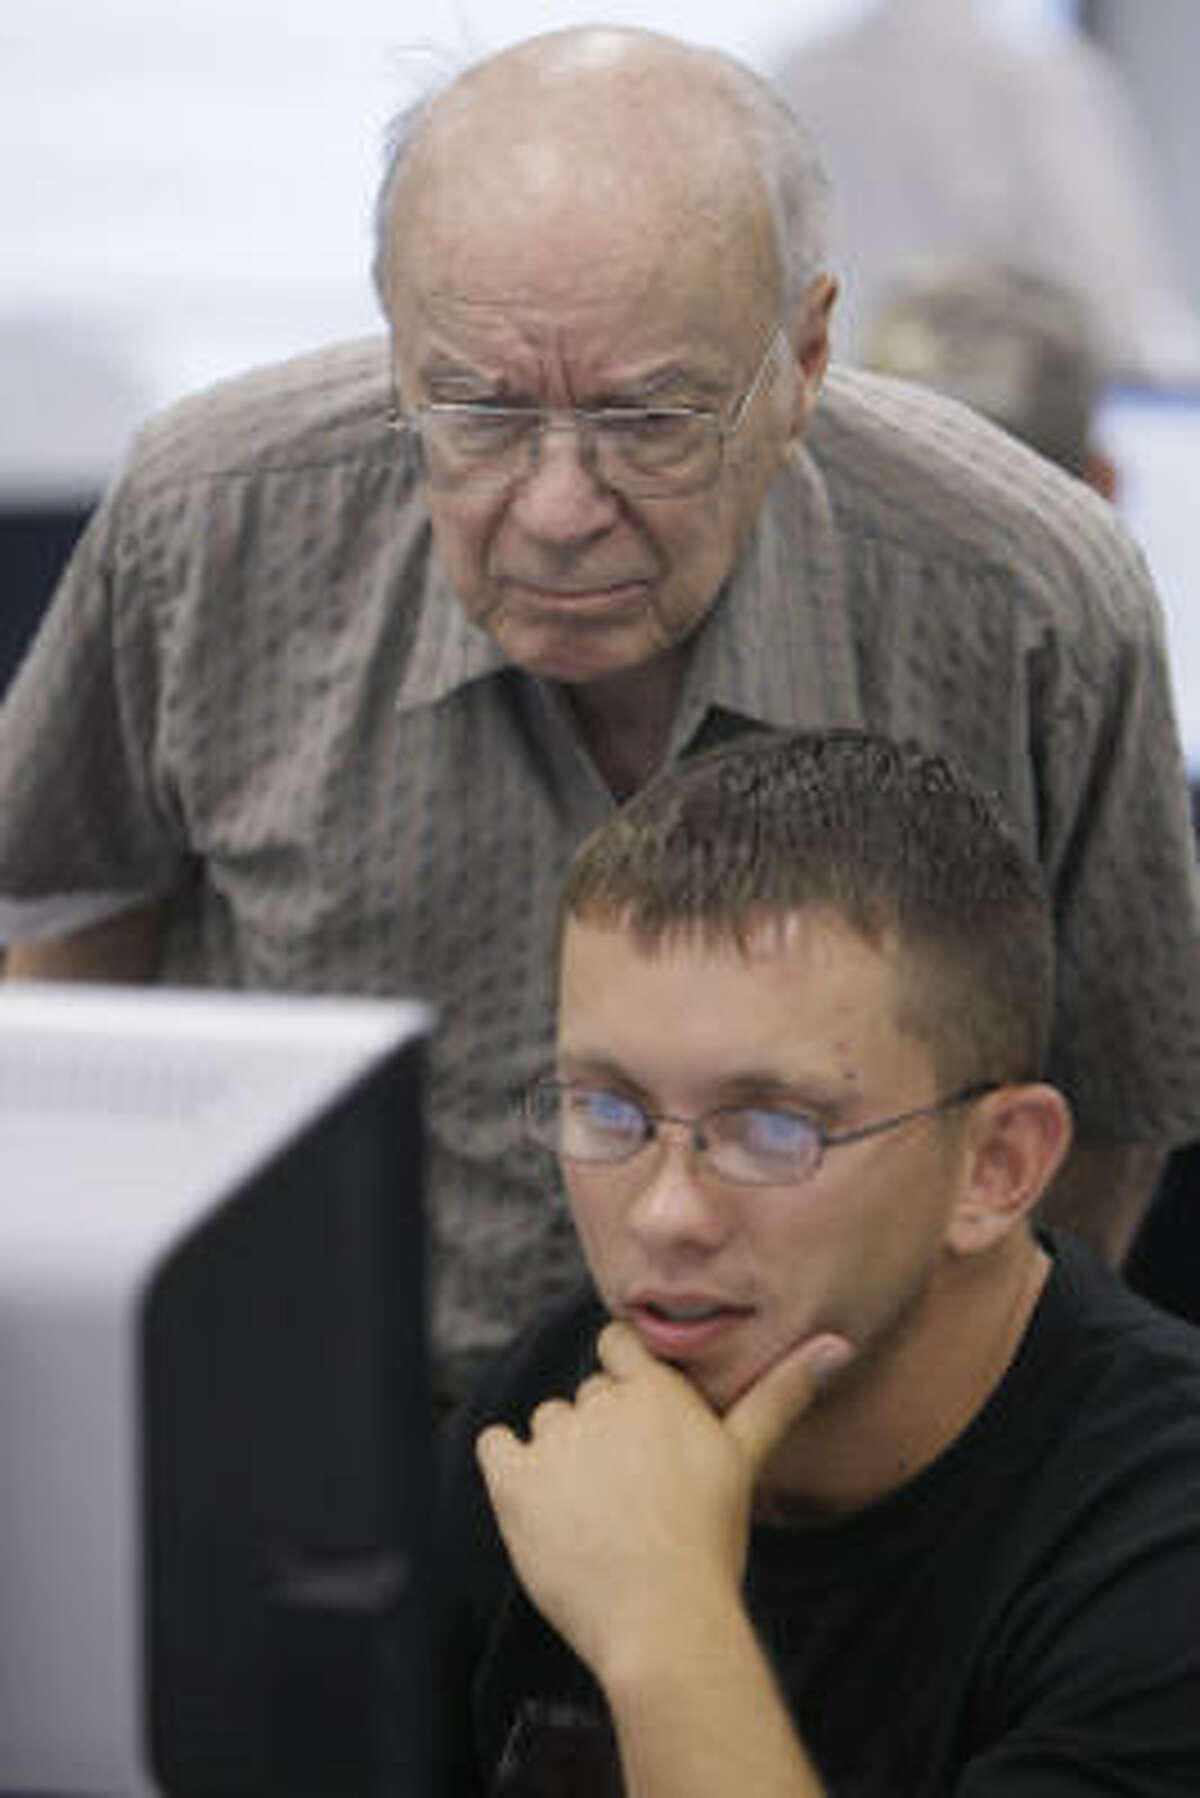 Wayne Hemingway assists Micha Hagan of Cypress at a computer during class.